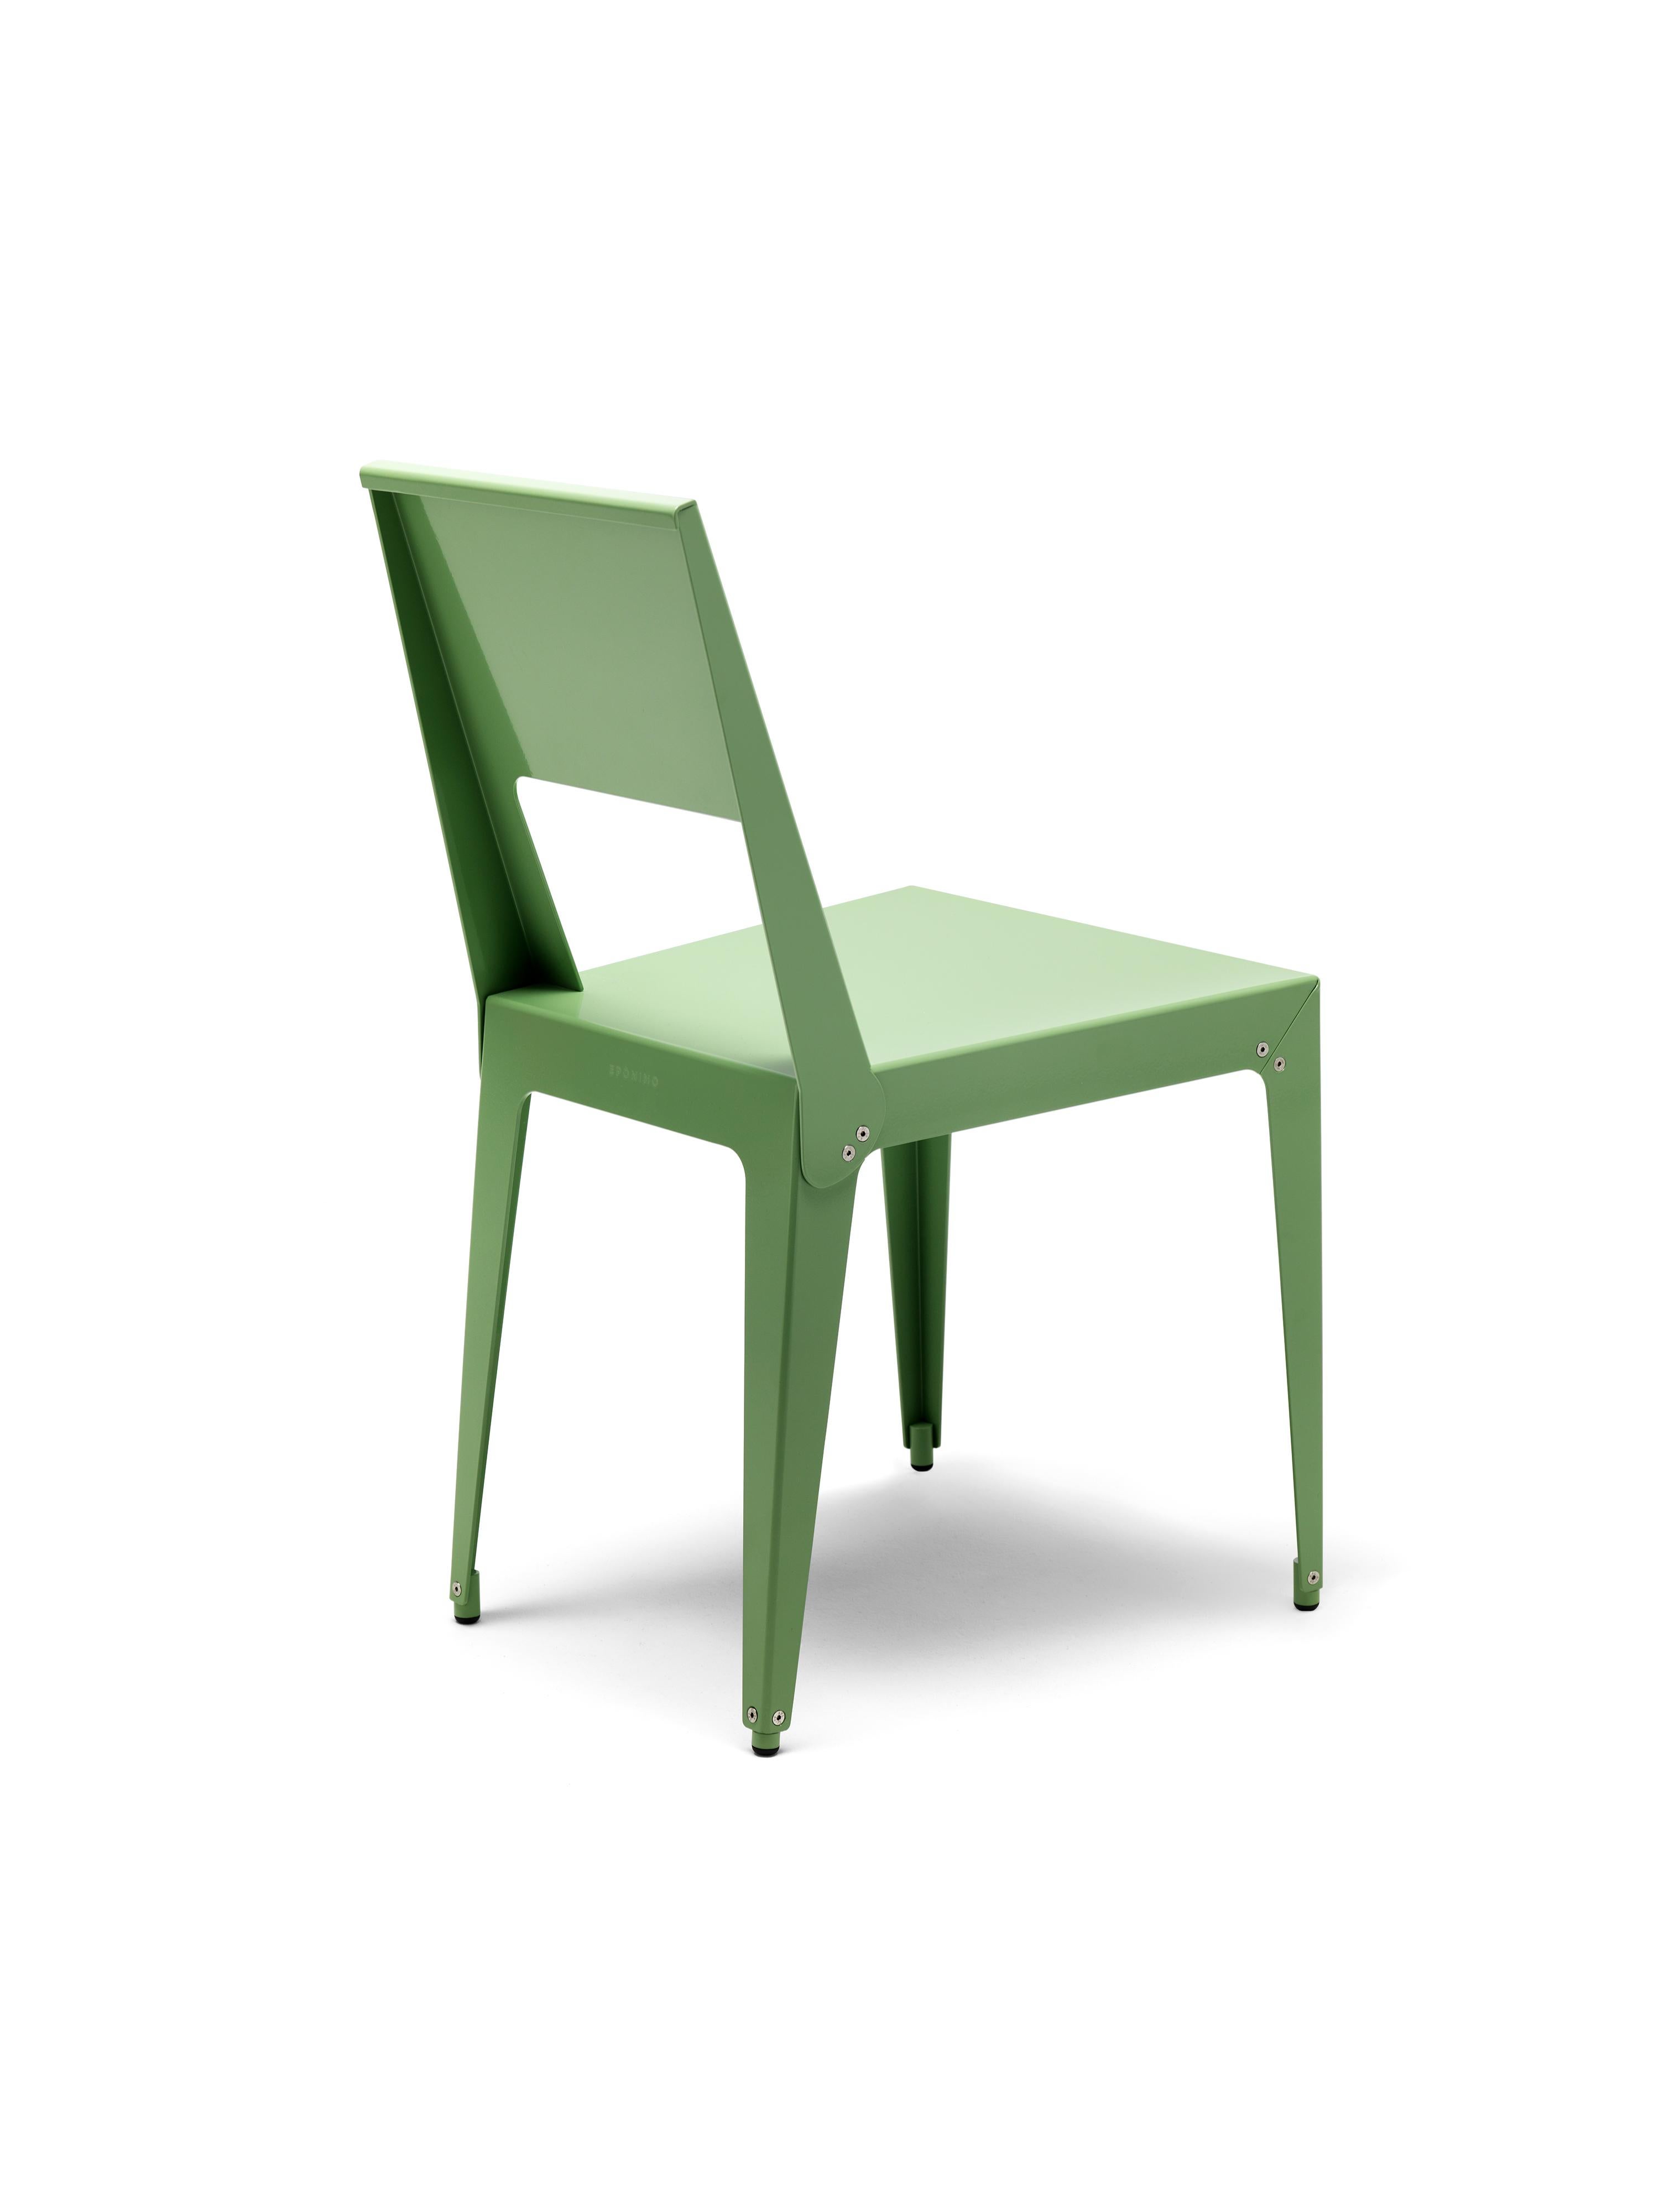 Aluchair reprend la forme de l'archétype de la chaise en bois, mais elle est en métal massif : le corps est créé par l'assemblage mécanique de deux feuilles d'aluminium habilement pliées. Aucune soudure n'intervient dans le processus de fabrication